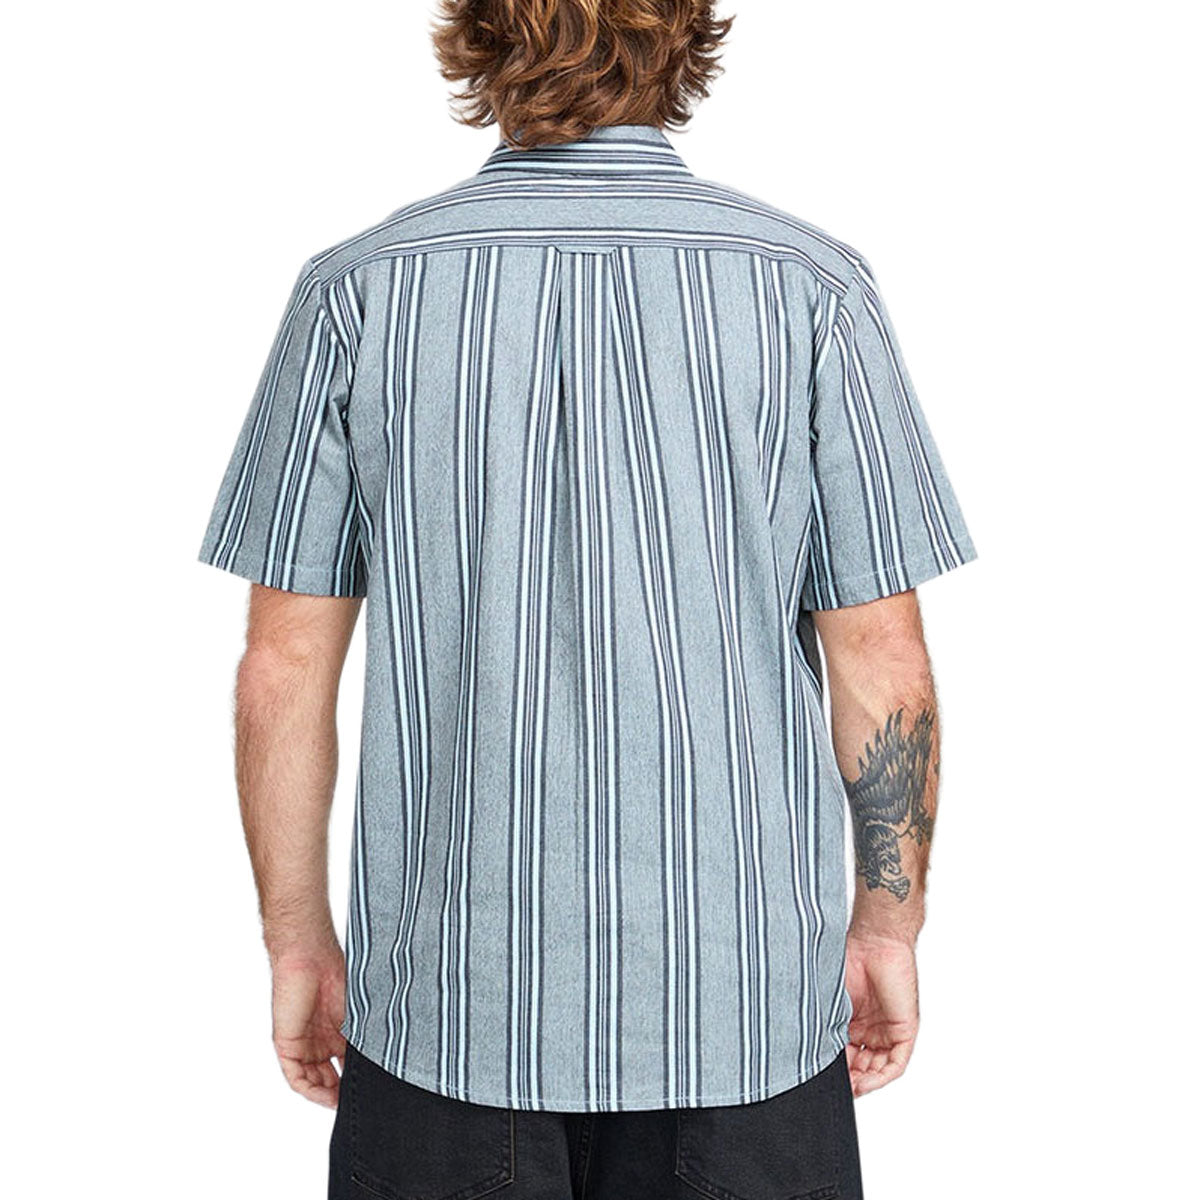 Volcom Newbar Stripe Shirt - Celestial Blue image 2